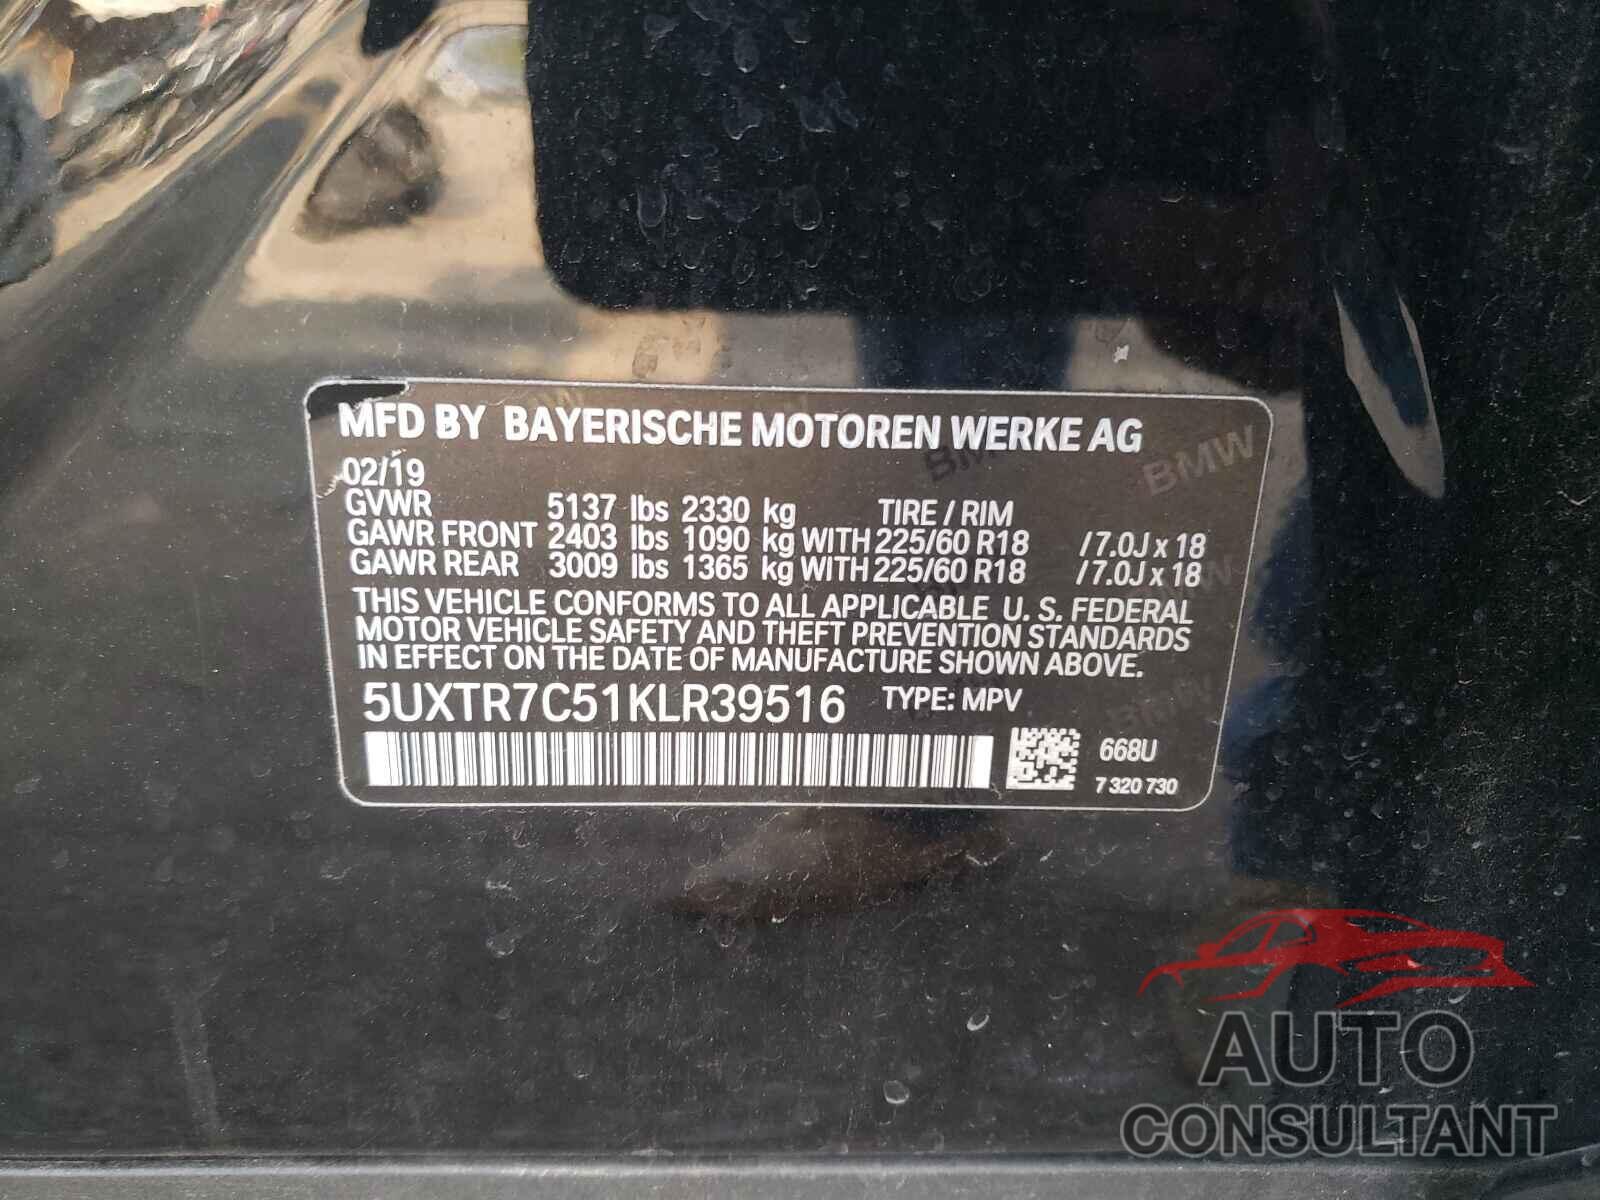 BMW X3 2019 - 5UXTR7C51KLR39516